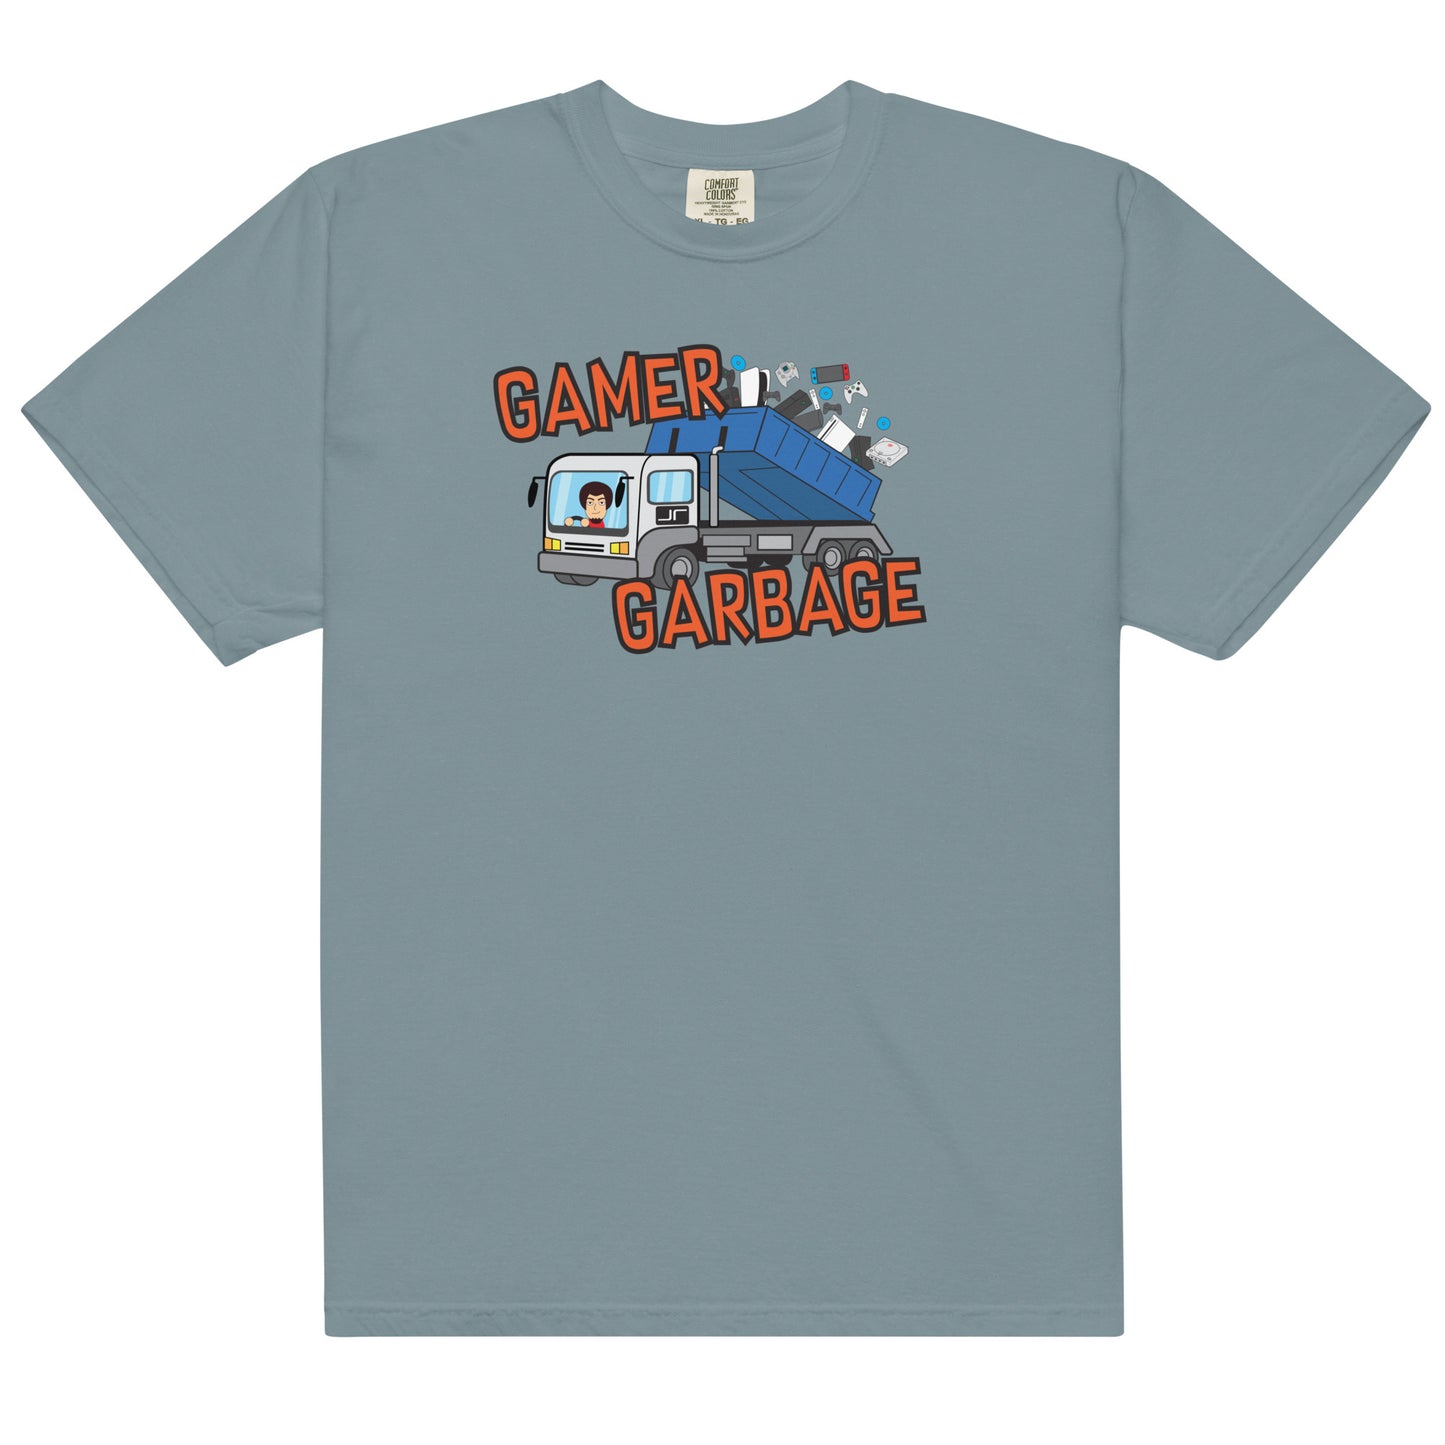 The Gamer Garbage T-Shirt